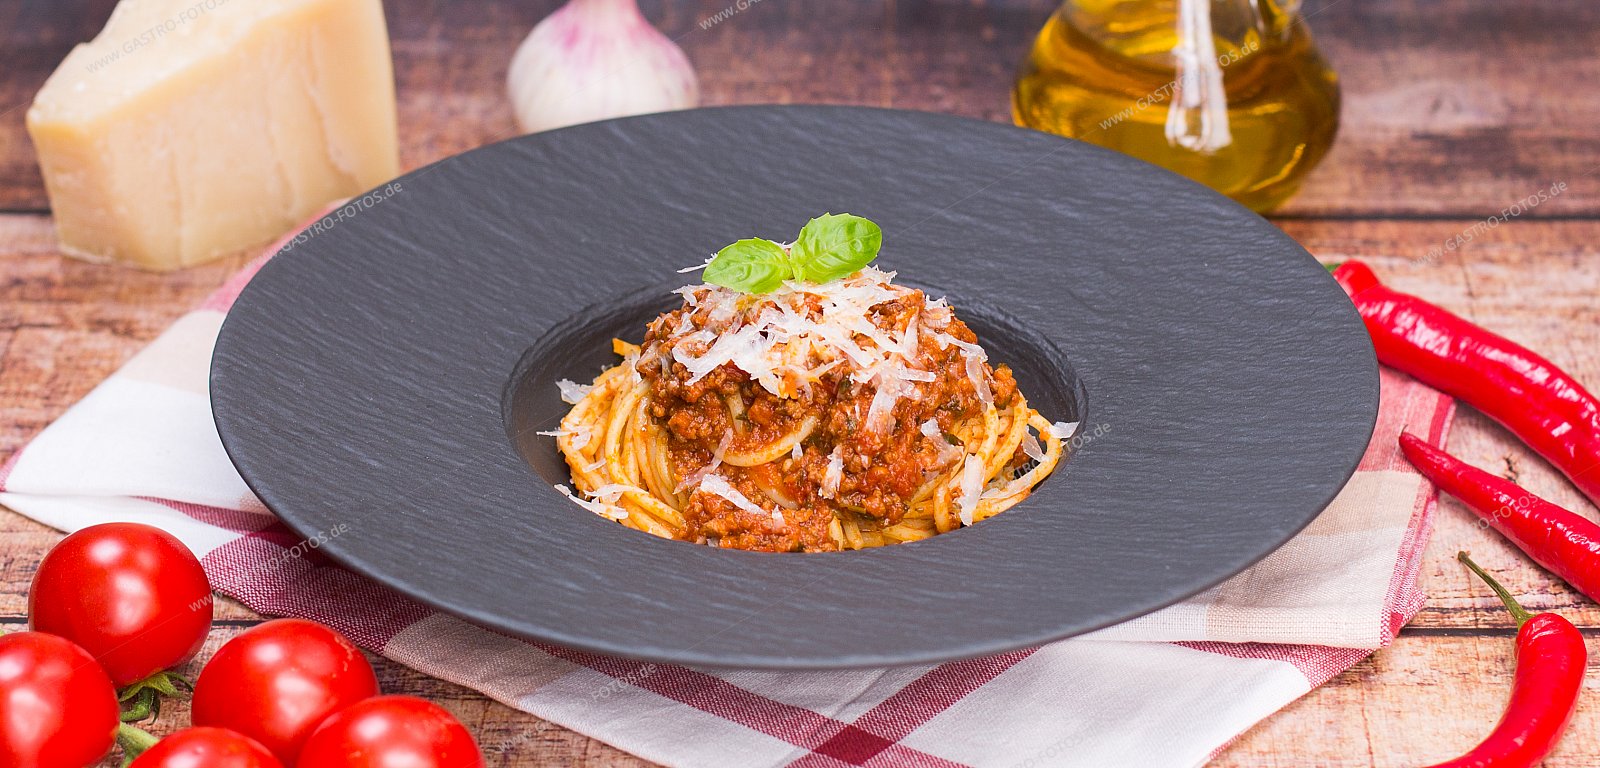 Spaghetti "Bolognese" - Nudelgerichte mit Fleisch